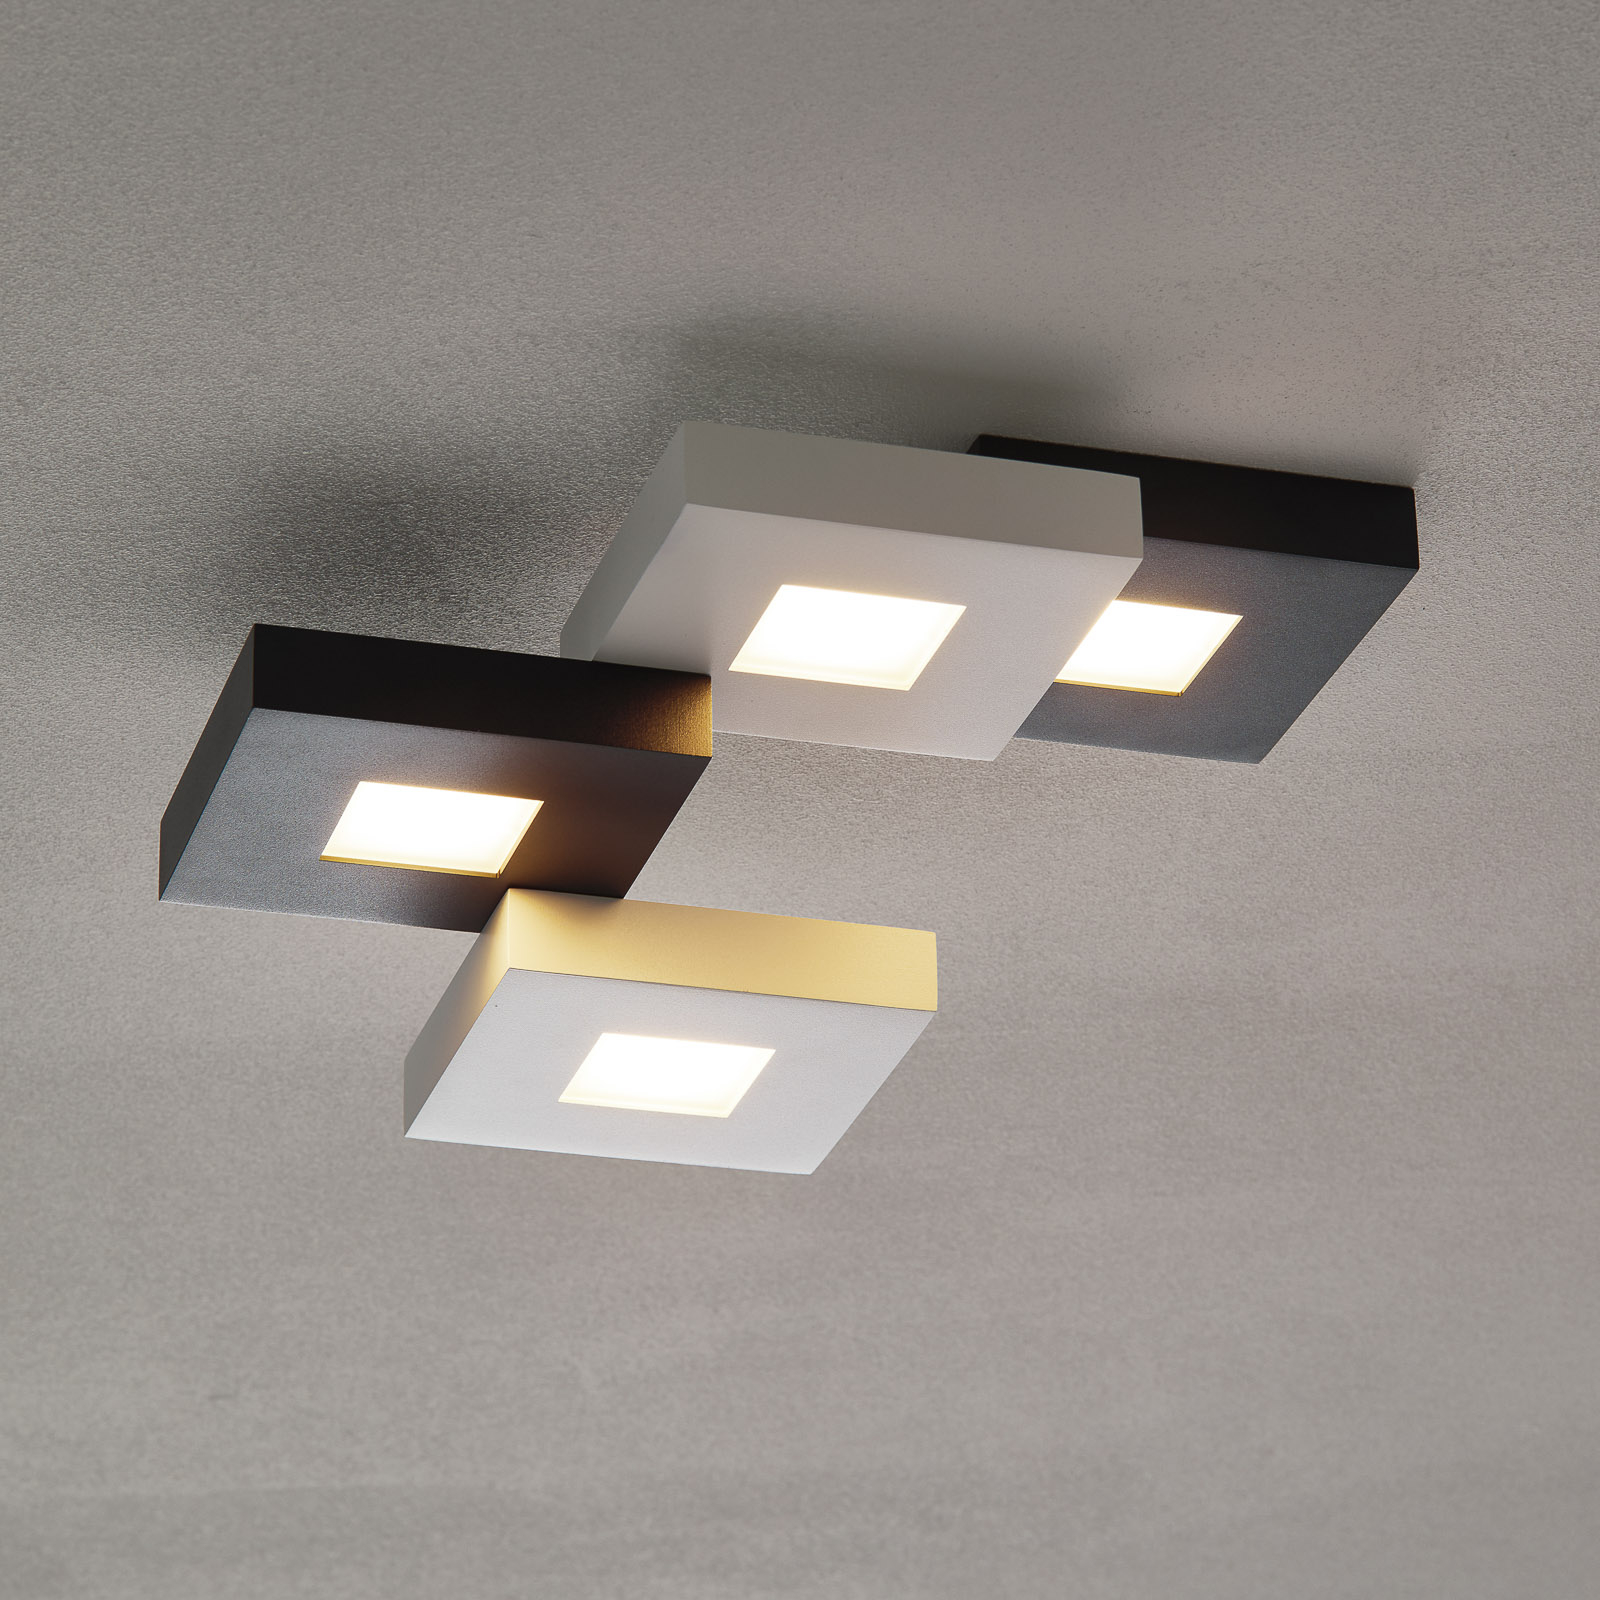 Cubus - LED ceiling lamp in black & white, 4-bulb.